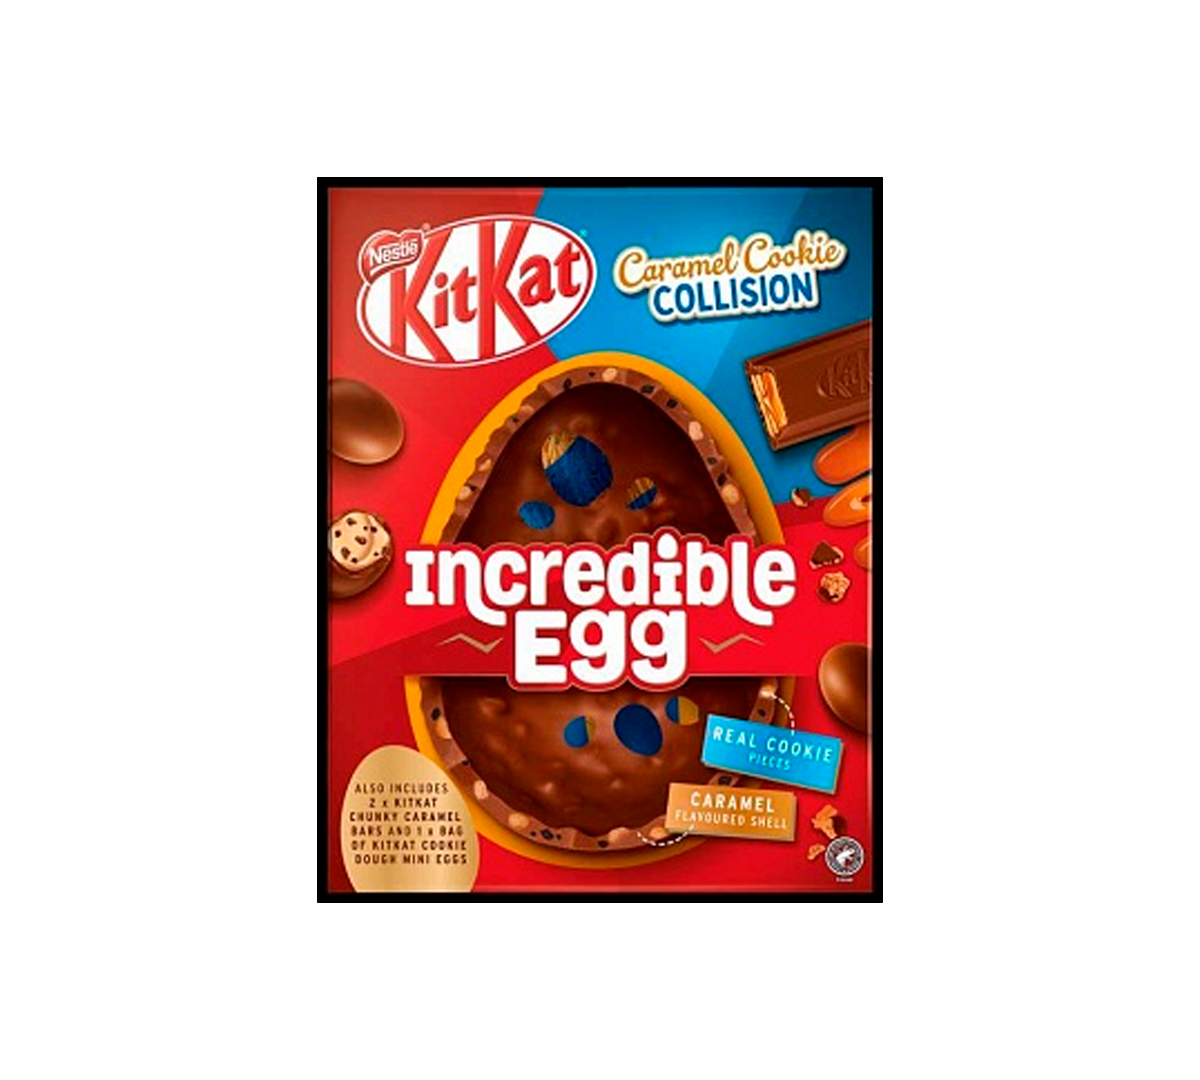 Kit Kat Caramel Cookie Collision Incredible Egg